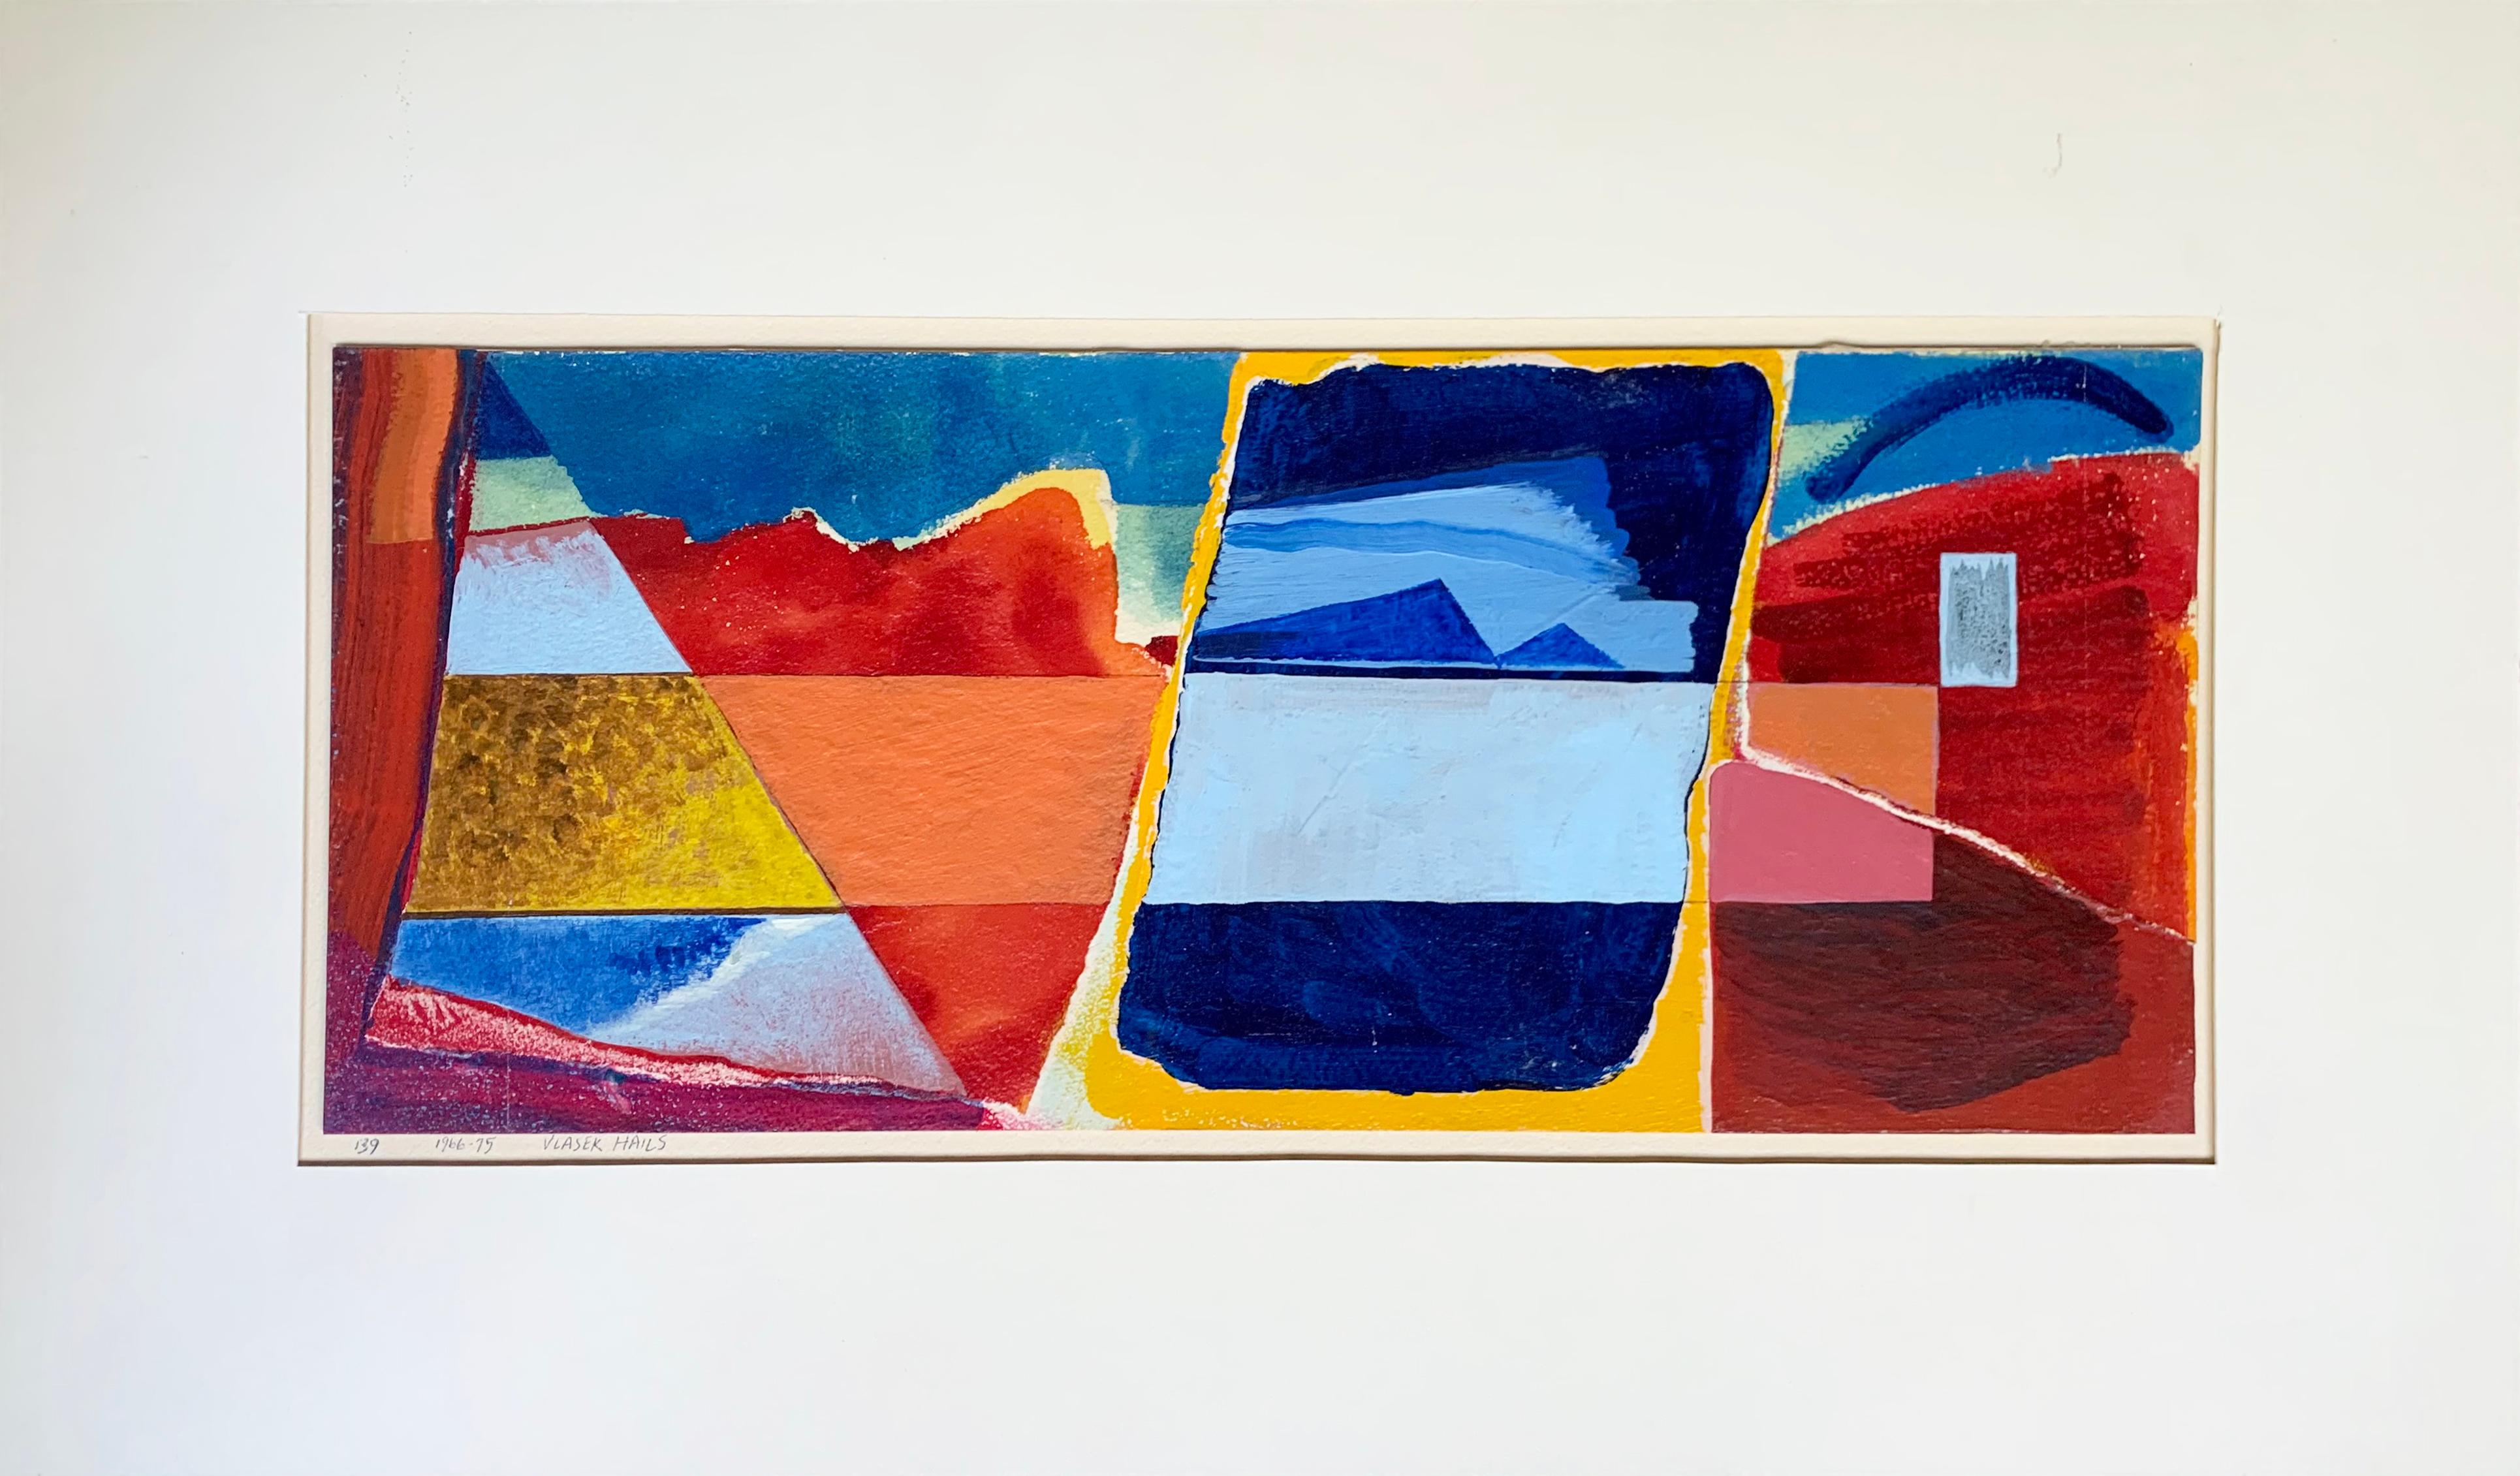 "Untitled" de l'artiste américaine Doris Vlasek Artistics est une peinture abstraite mixte sur papier, installée sur un panneau de musée.

Doris Vlasek-Hails est née à Chicago en 1938, un an après l'ouverture du New Bauhaus par Moholy-Nagy dans le